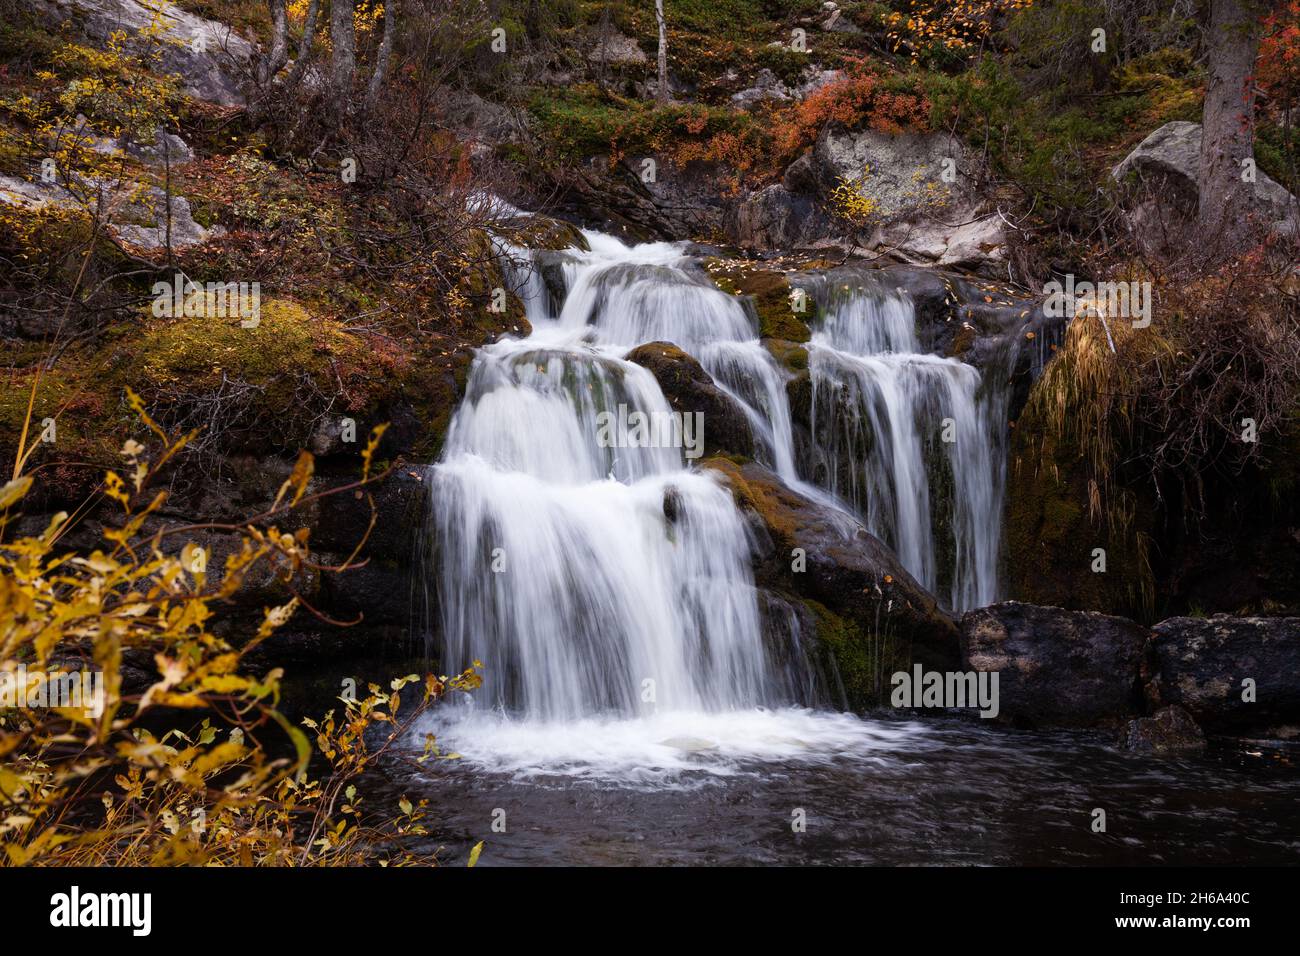 Der wunderschöne Kullaoja-Wasserfall fließt mitten in den Herbstfarben. Erschossen in der Nähe von Salla, Nordfinnland. Stockfoto